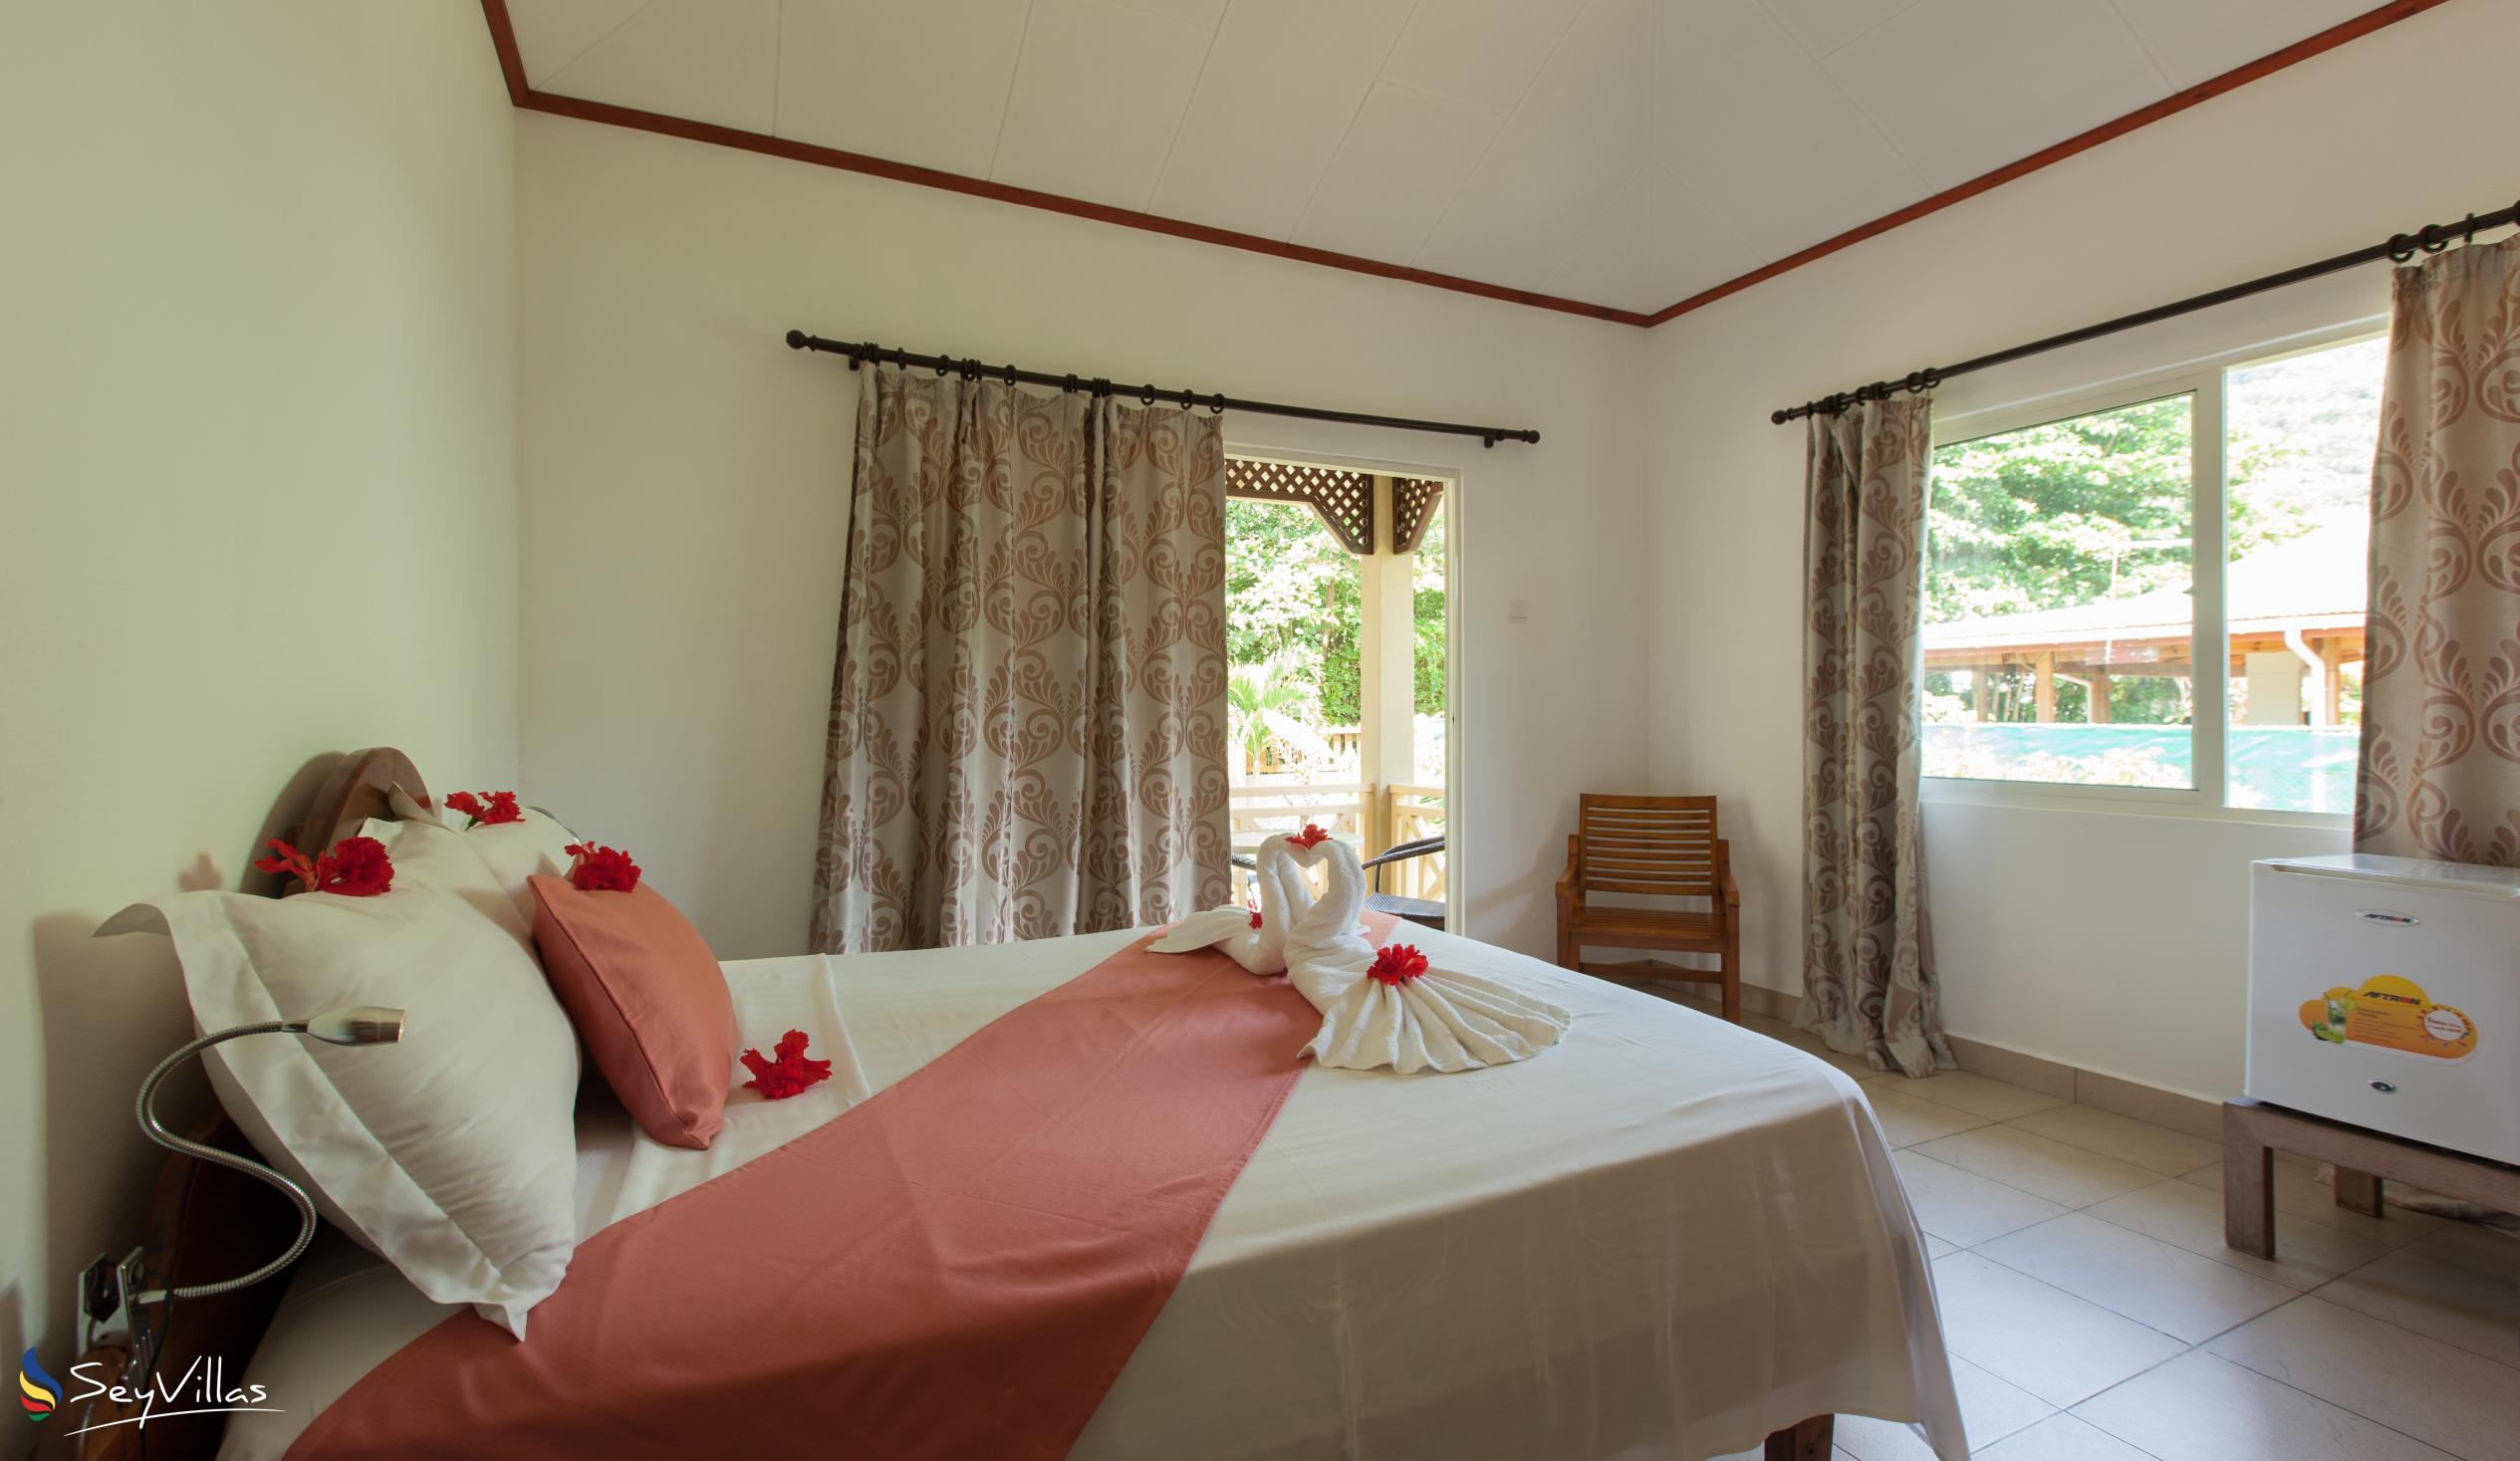 Foto 21: Hostellerie La Digue - Bungalow con 3 camere da letto - La Digue (Seychelles)